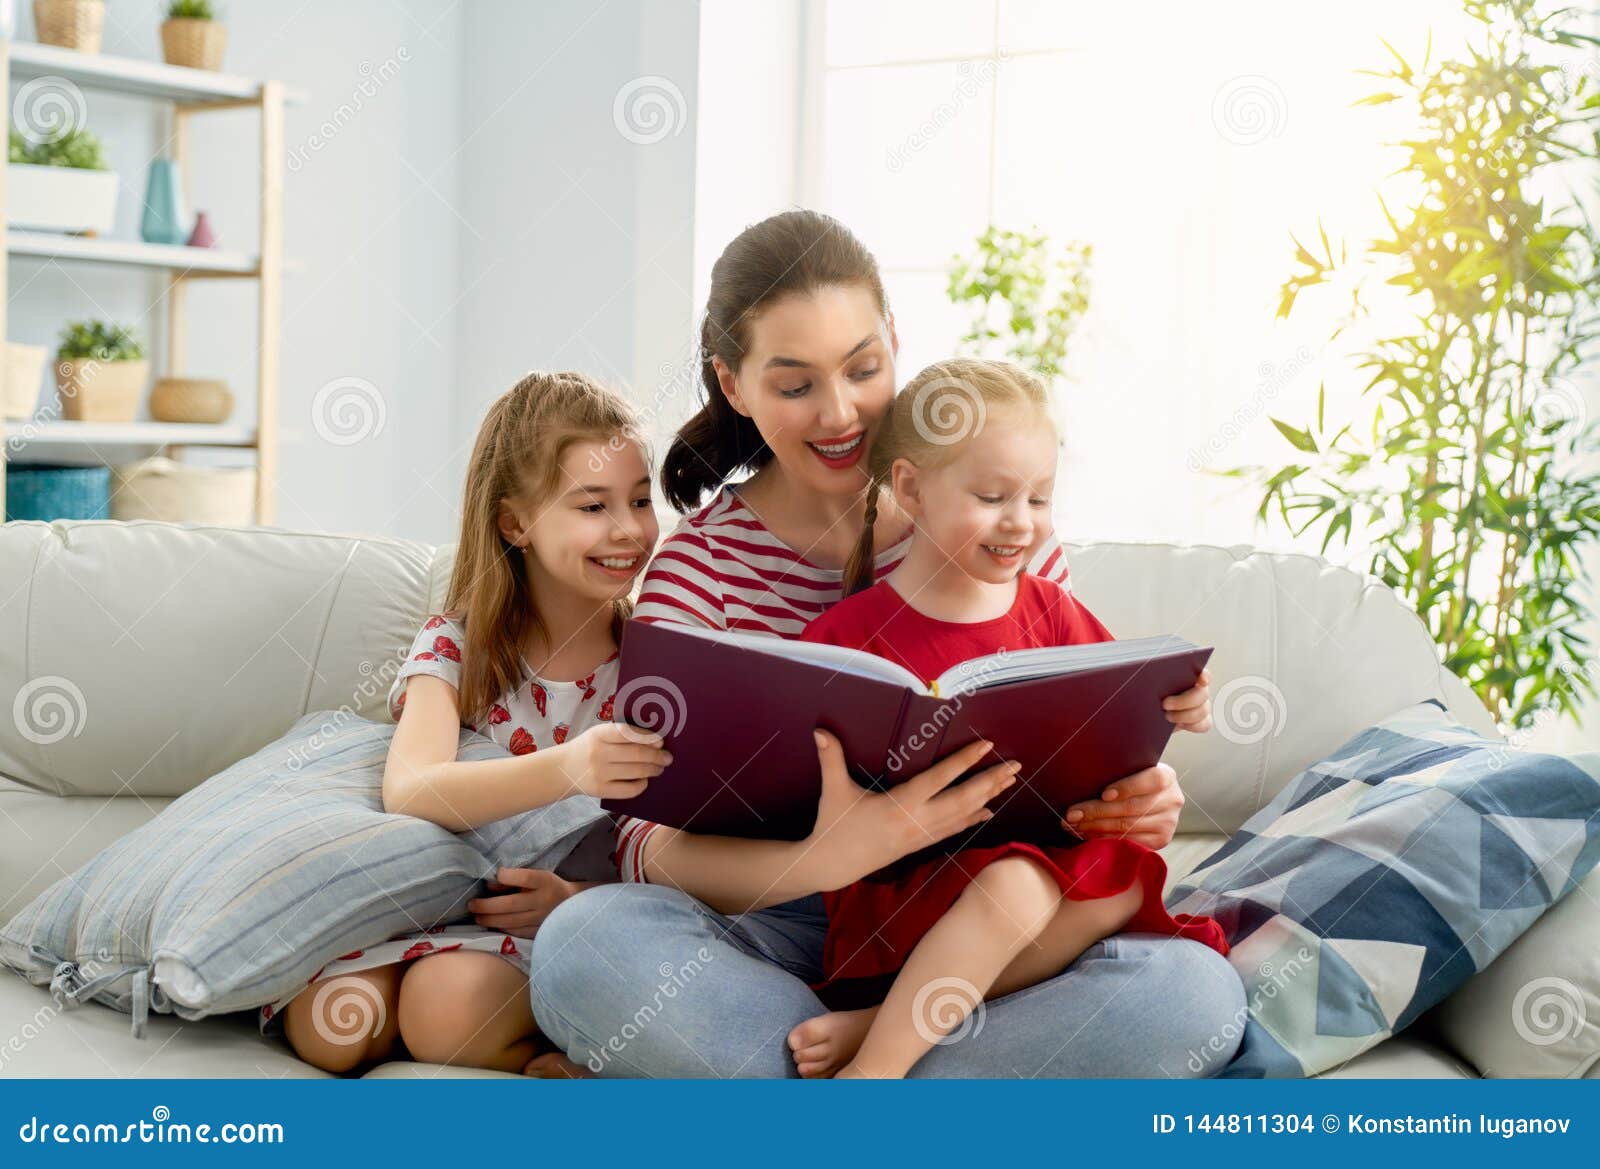 Видео читающая мама. Читает семья читает Страна. Читающая семья. Xbnftn ctvmz xbnfytn cnhfyf. Семья читает книгу.